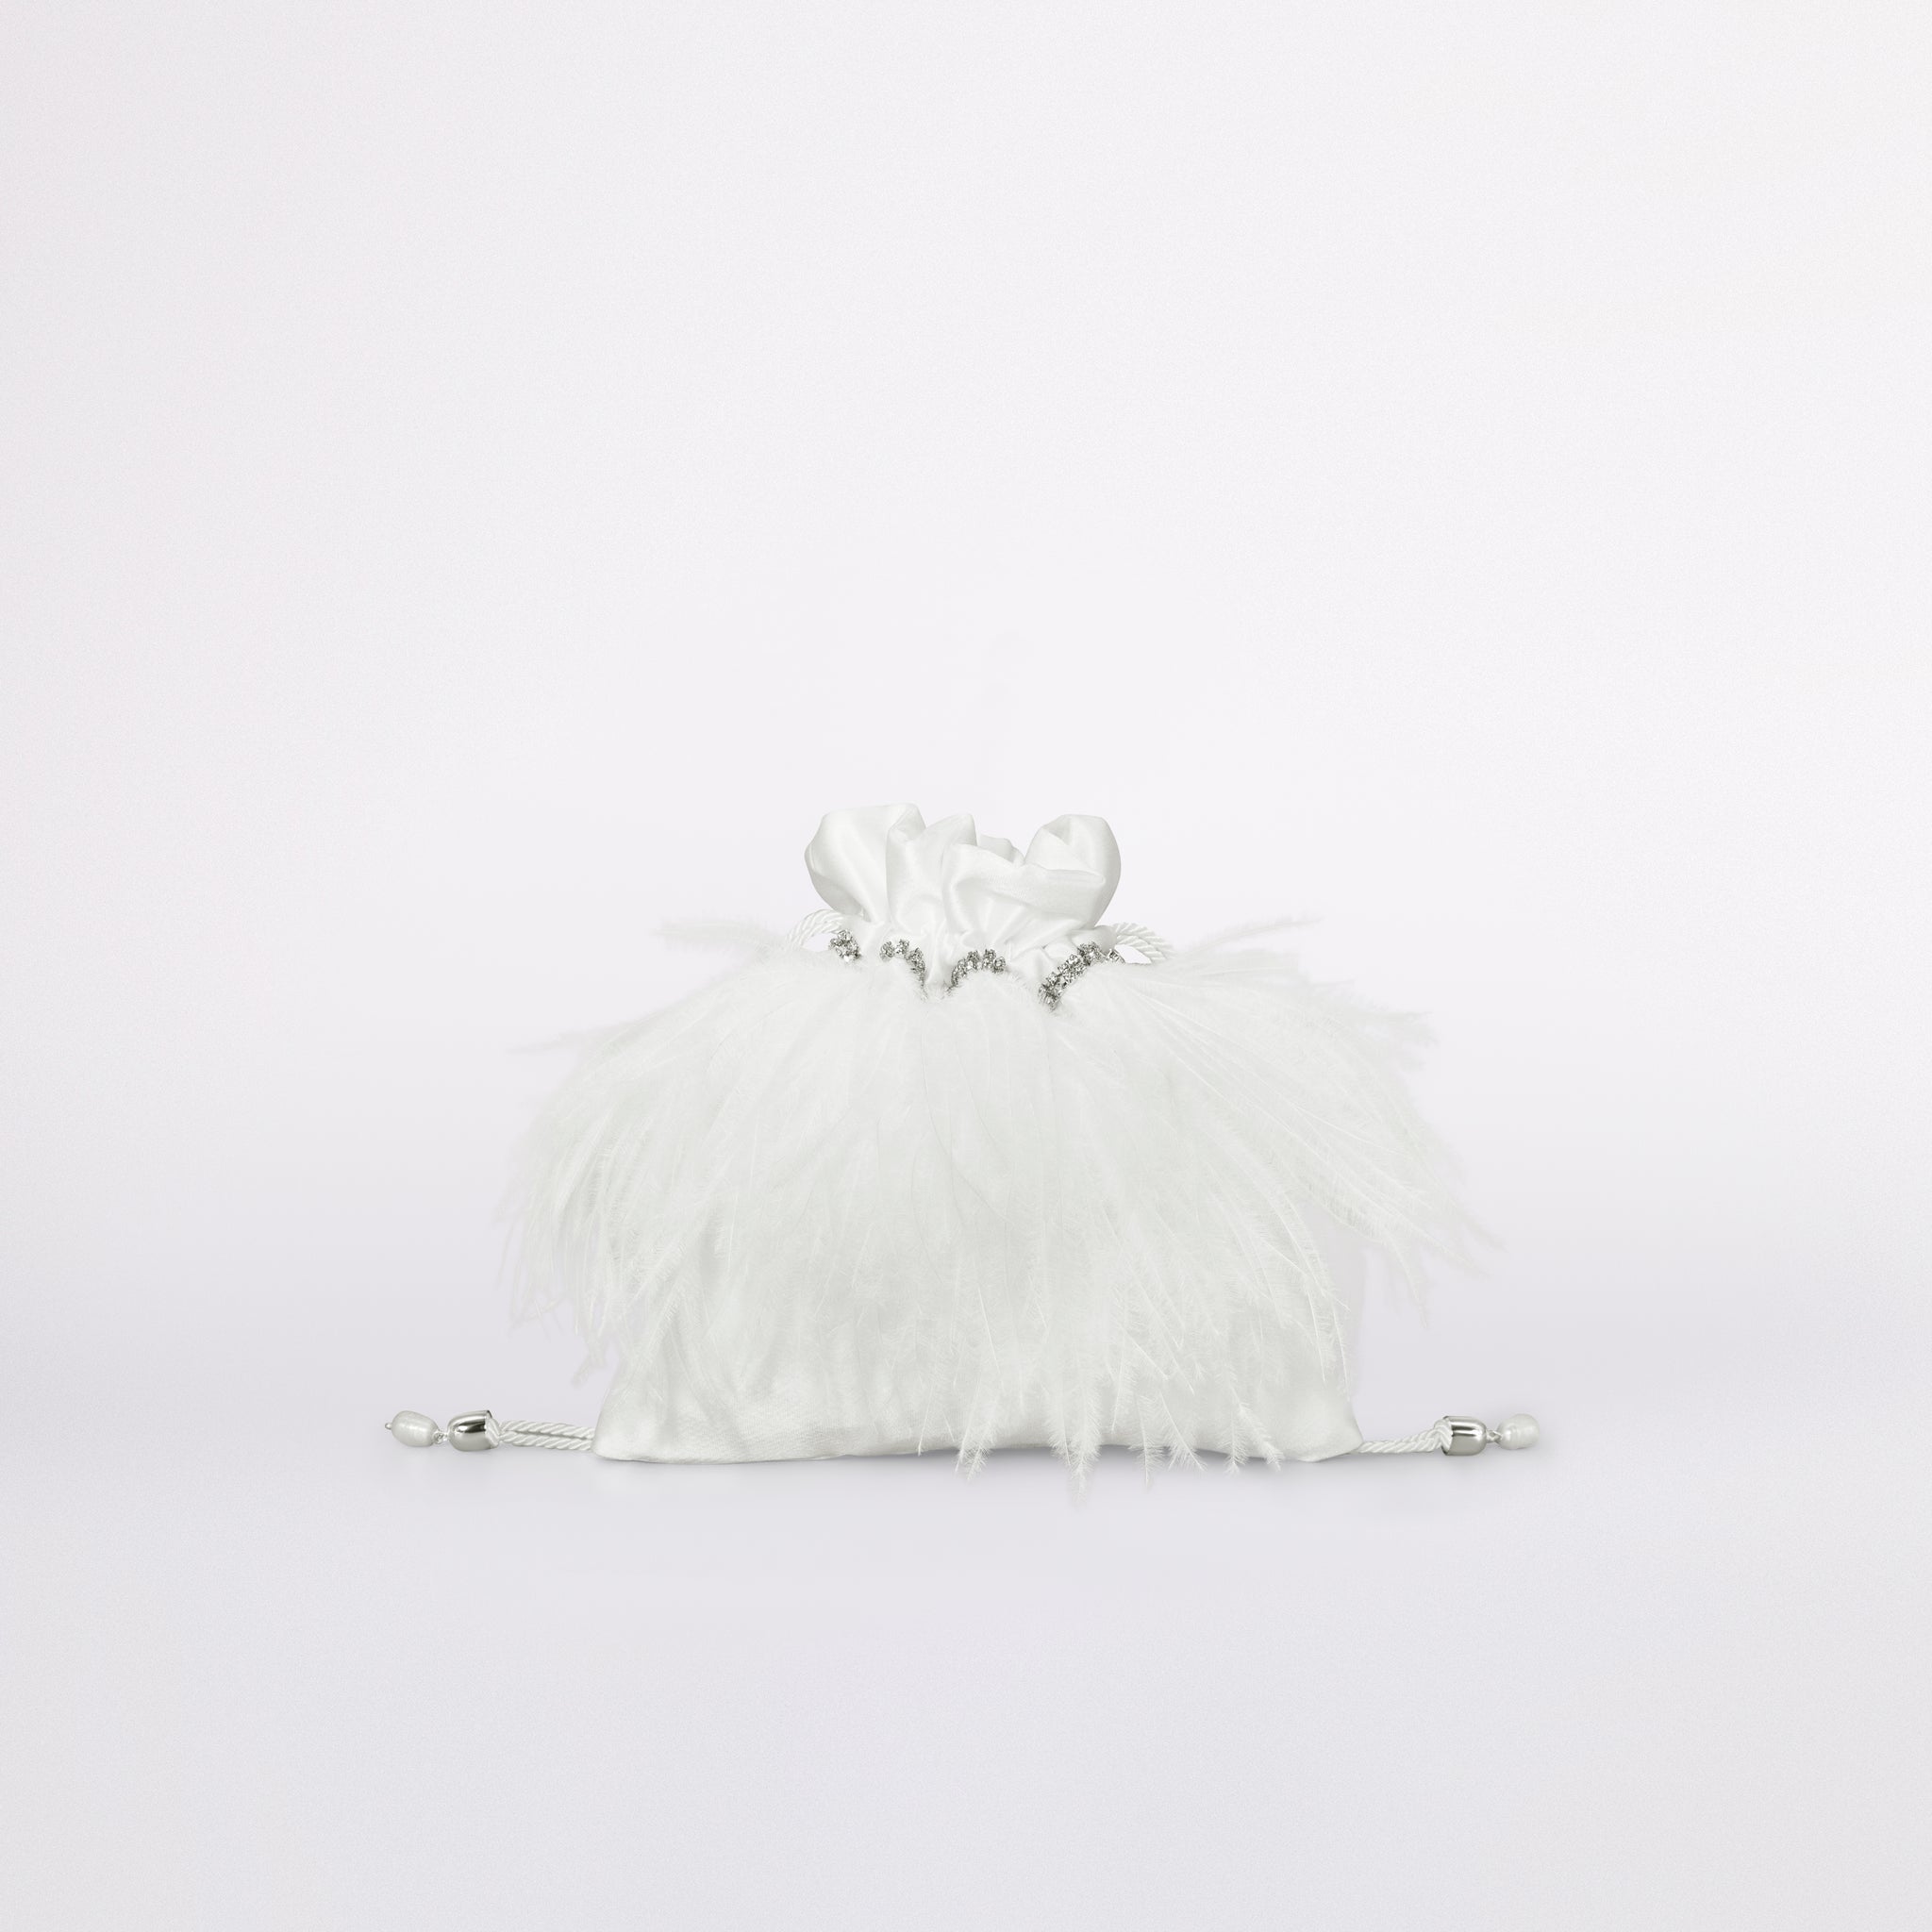 La mini feather bag in versione love collection